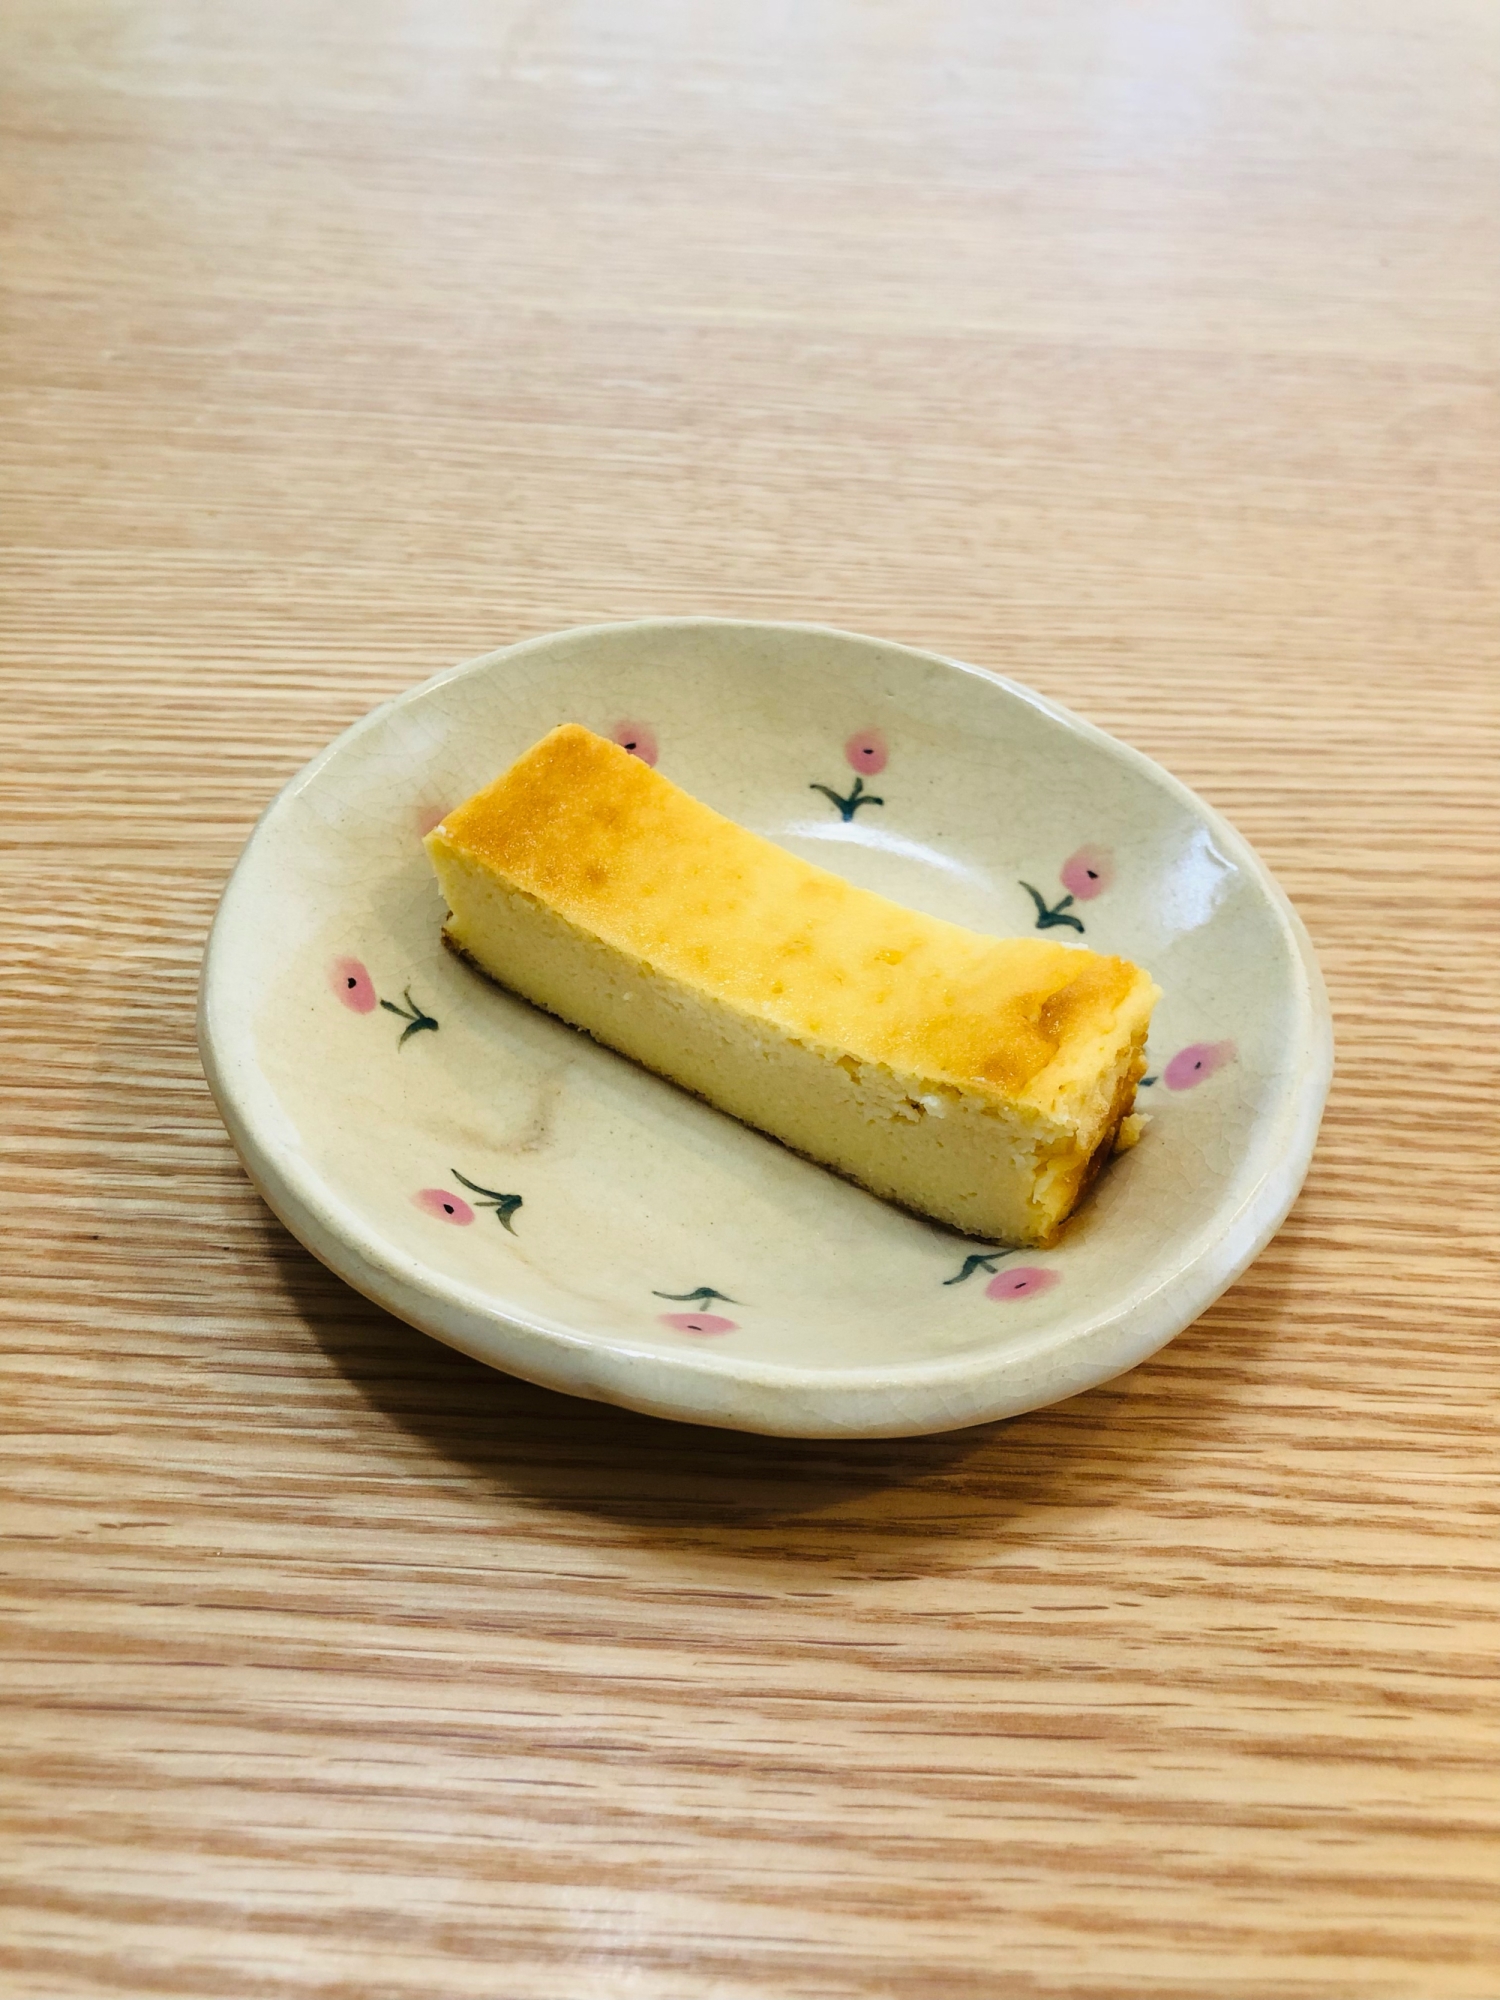 チーズケーキ風 おからとヨーグルトのヘルシーケーキ レシピ 作り方 By さくらりこ 楽天レシピ